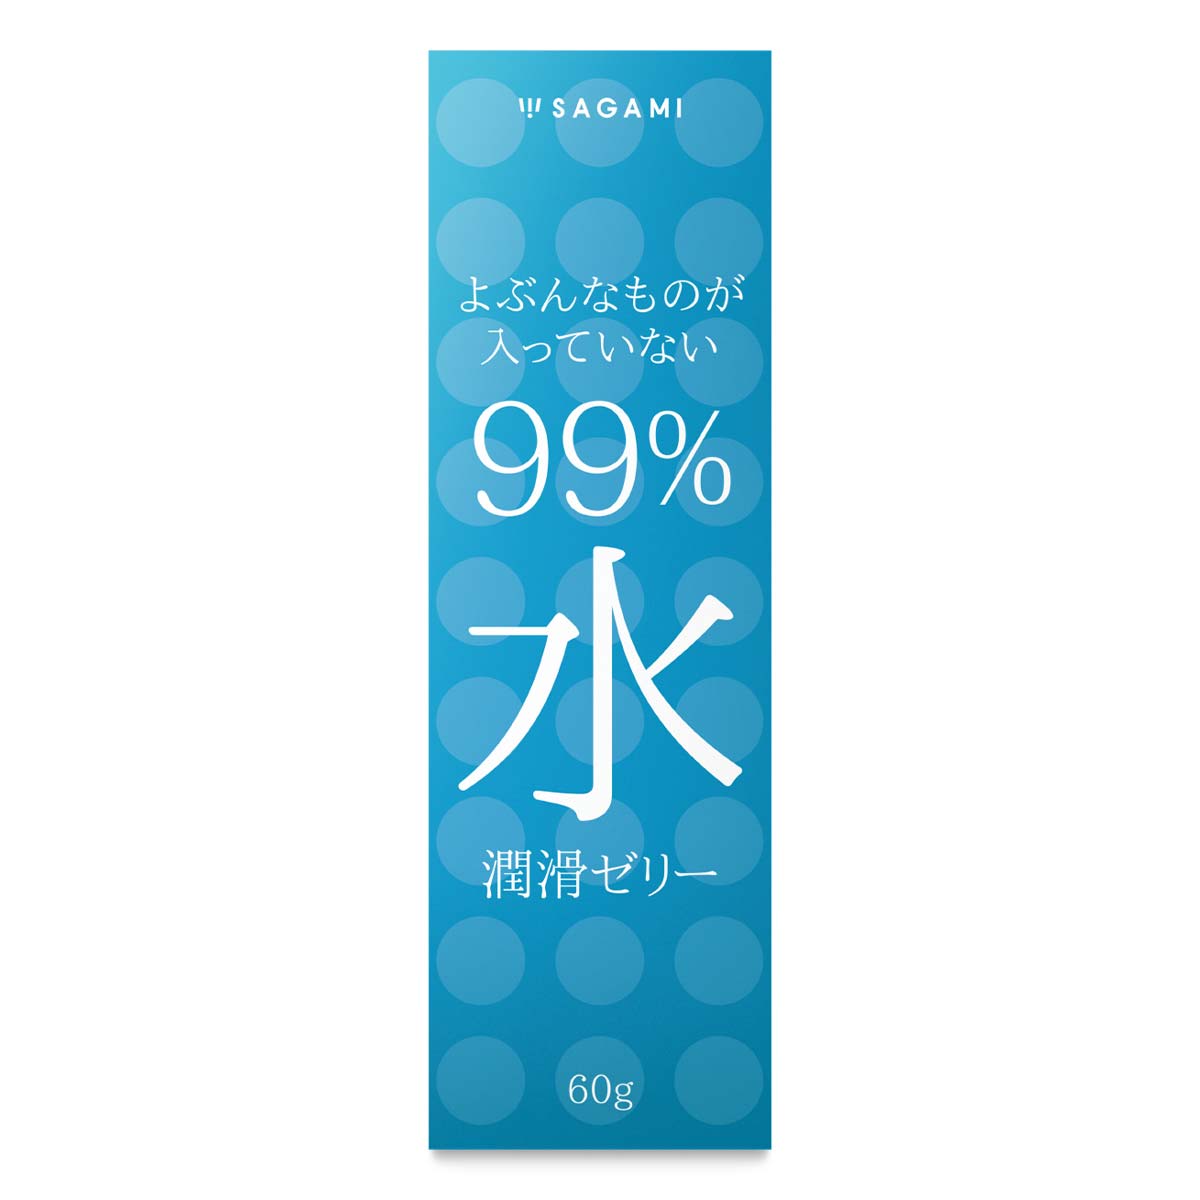 Sagami 99% Water